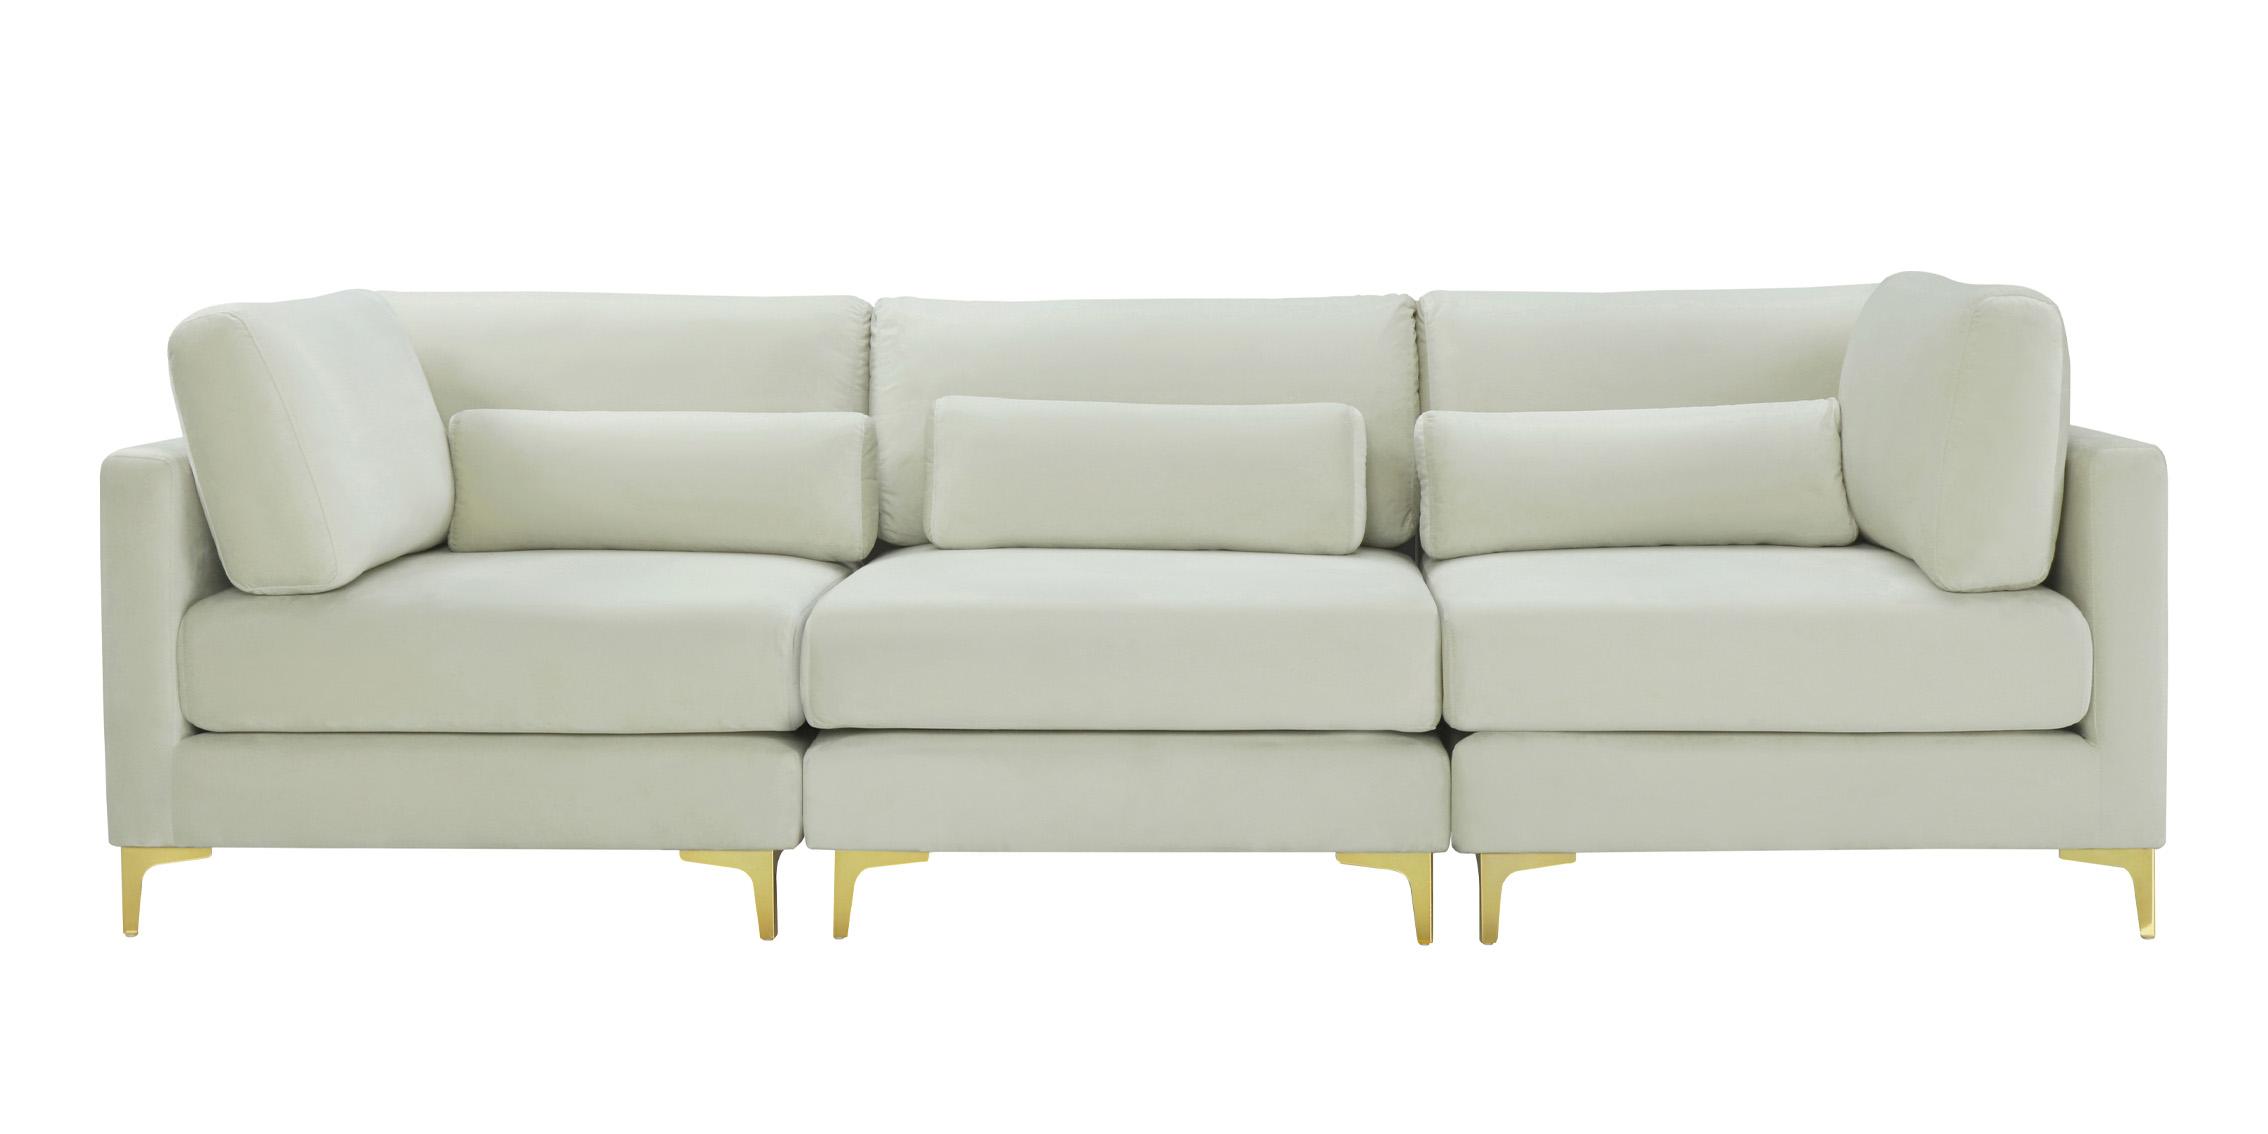 

    
Meridian Furniture JULIA 605Cream-S108 Modular Sofa Cream 605Cream-S108
